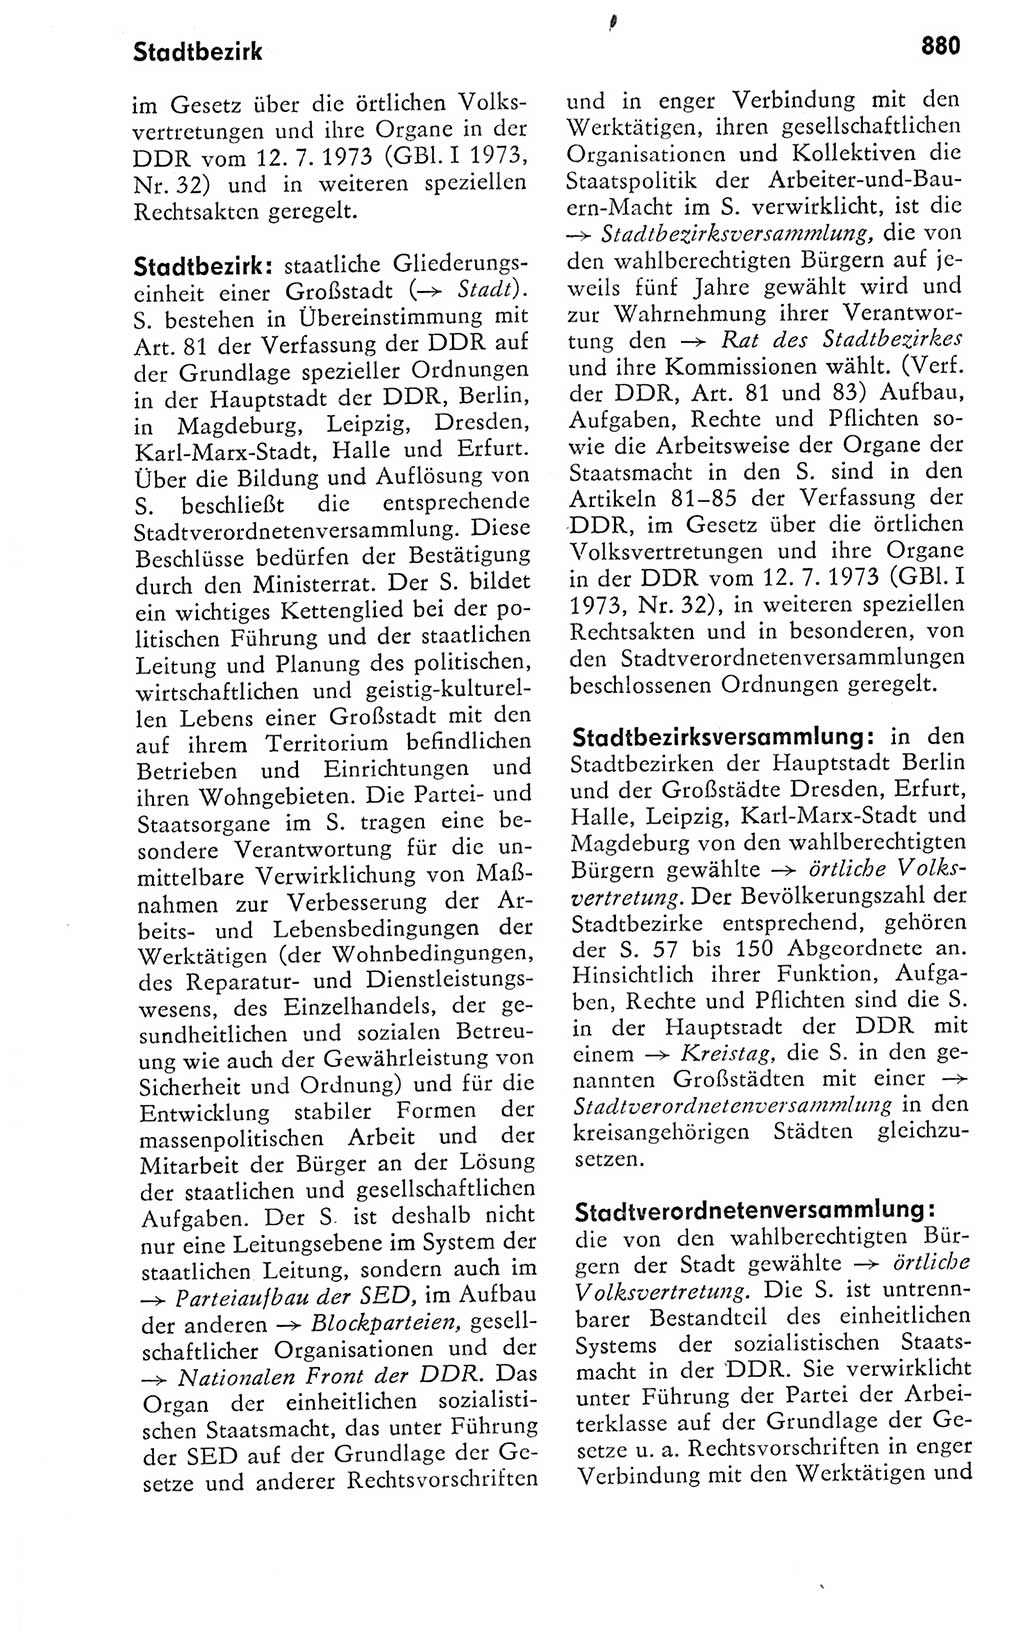 Kleines politisches Wörterbuch [Deutsche Demokratische Republik (DDR)] 1978, Seite 880 (Kl. pol. Wb. DDR 1978, S. 880)